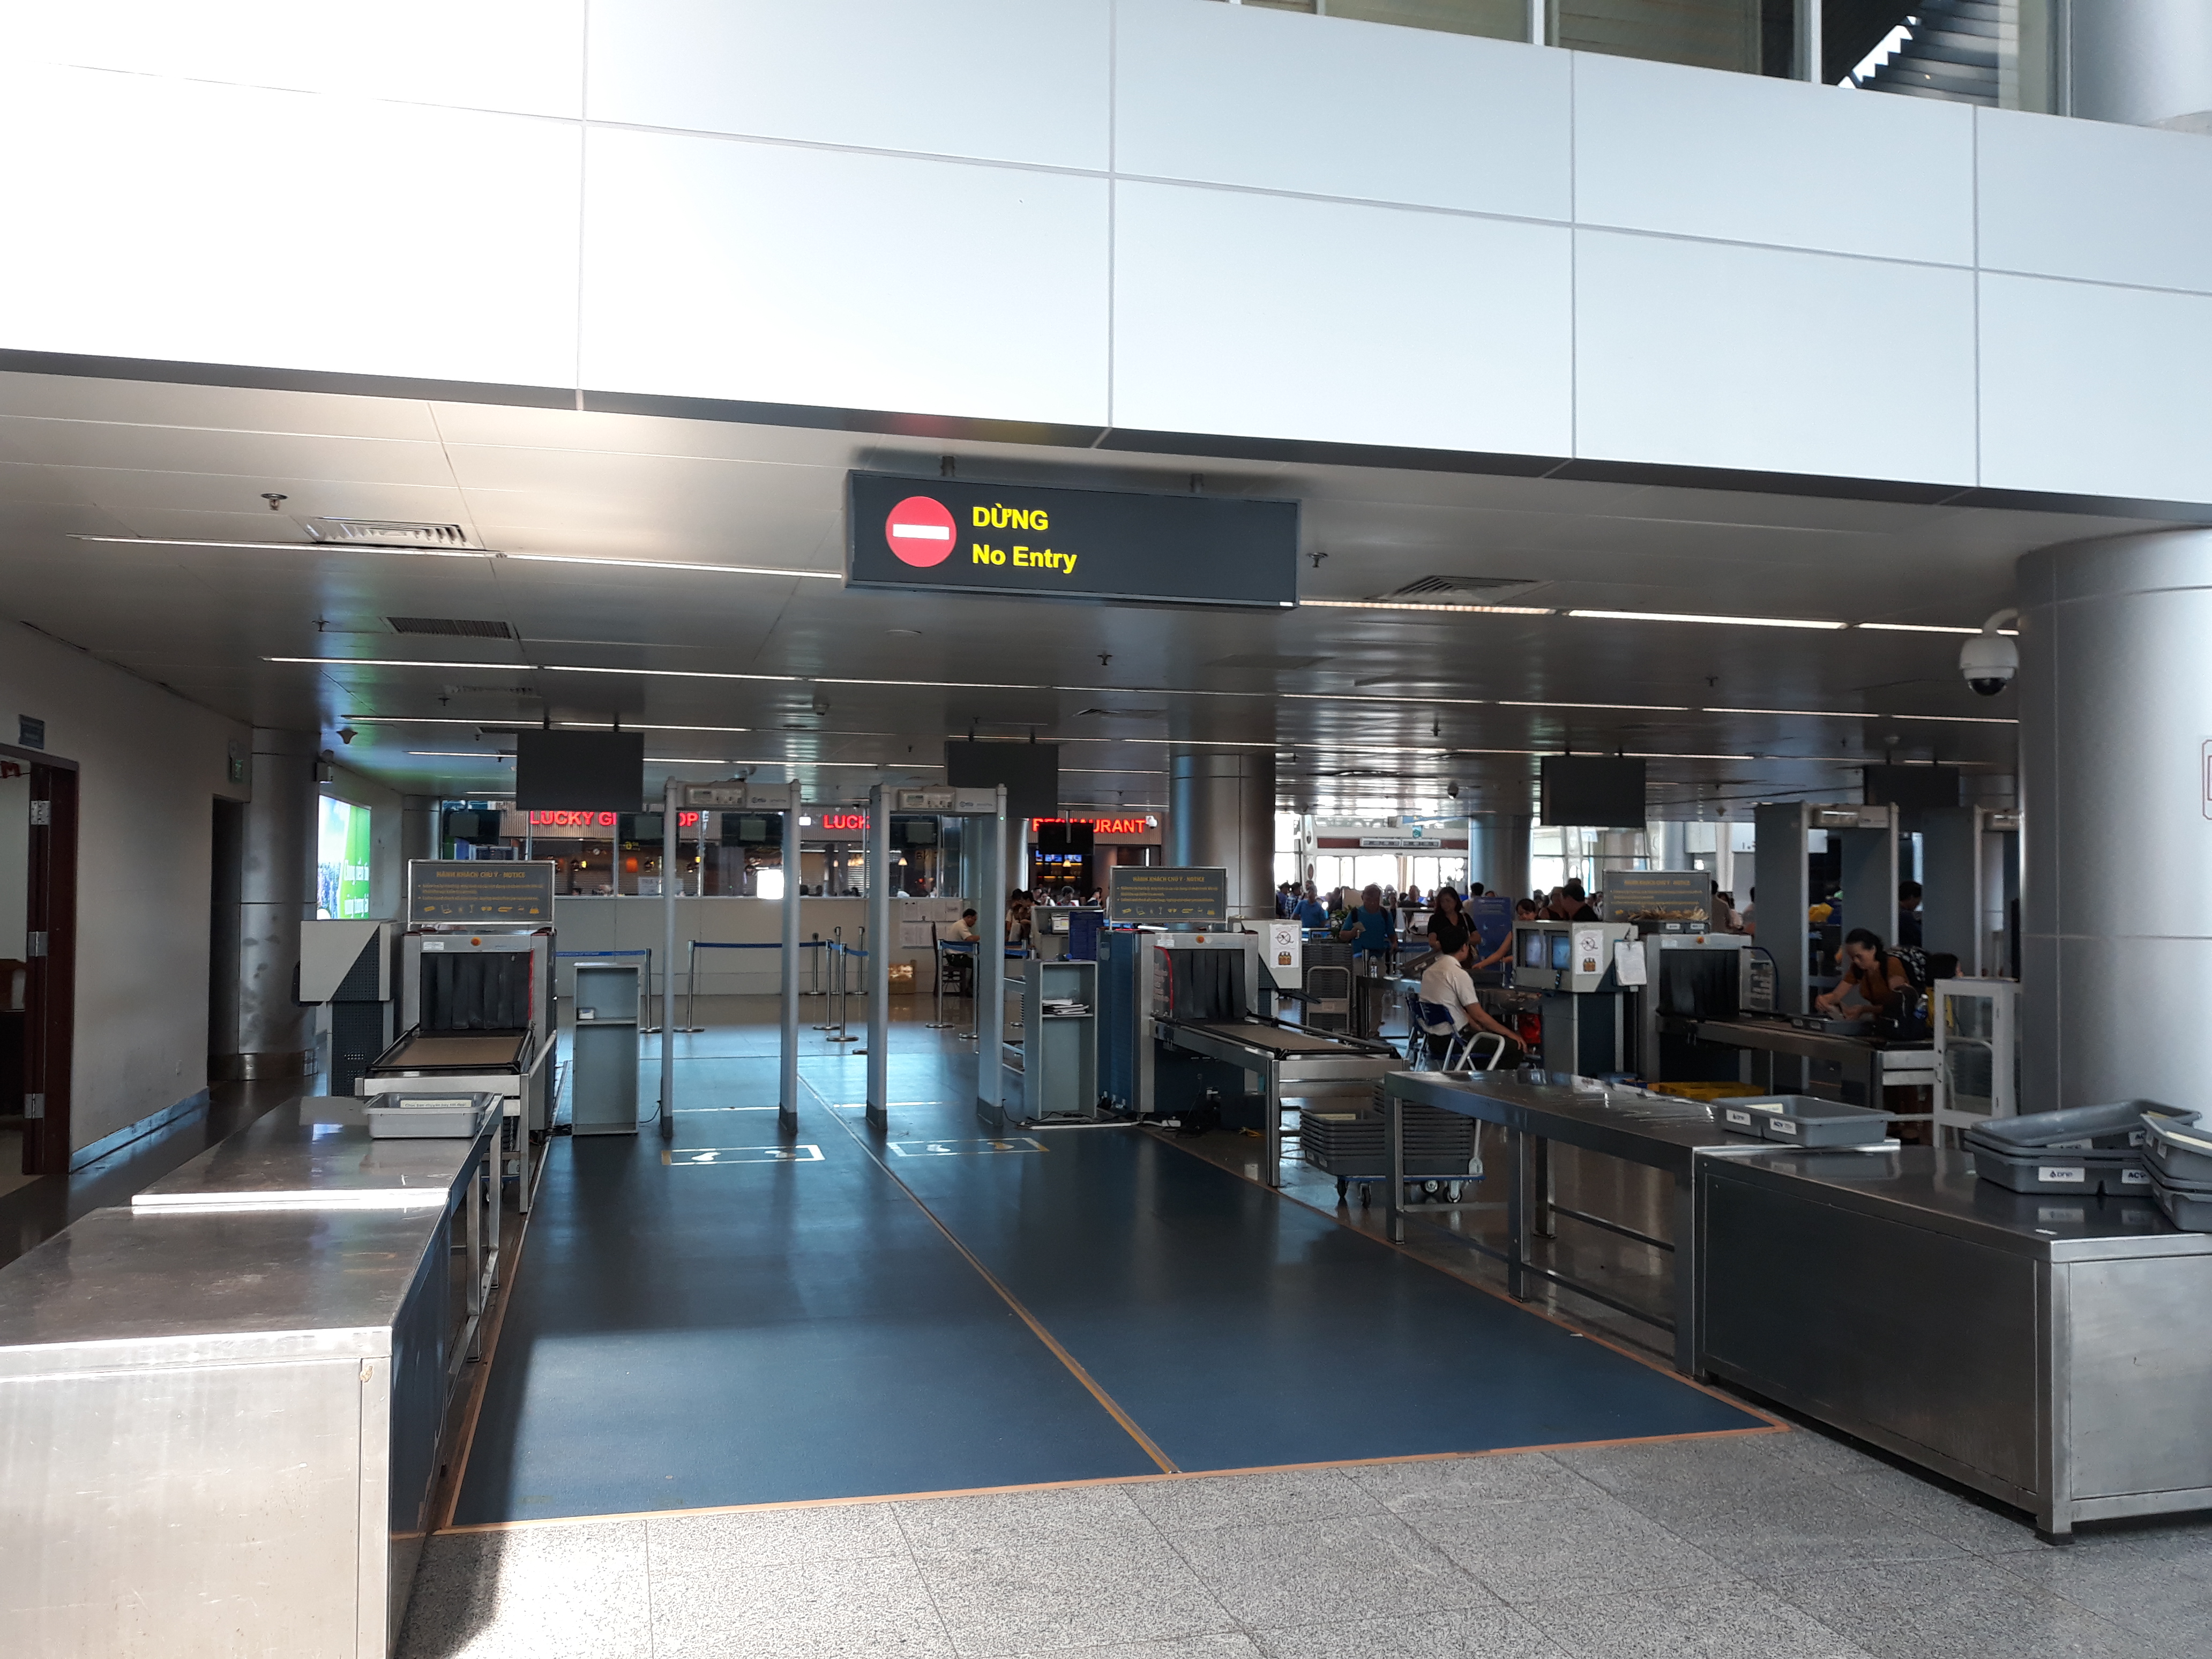 需要使用哪种签证通过岘港机场进入越南。如何获得这种签证？